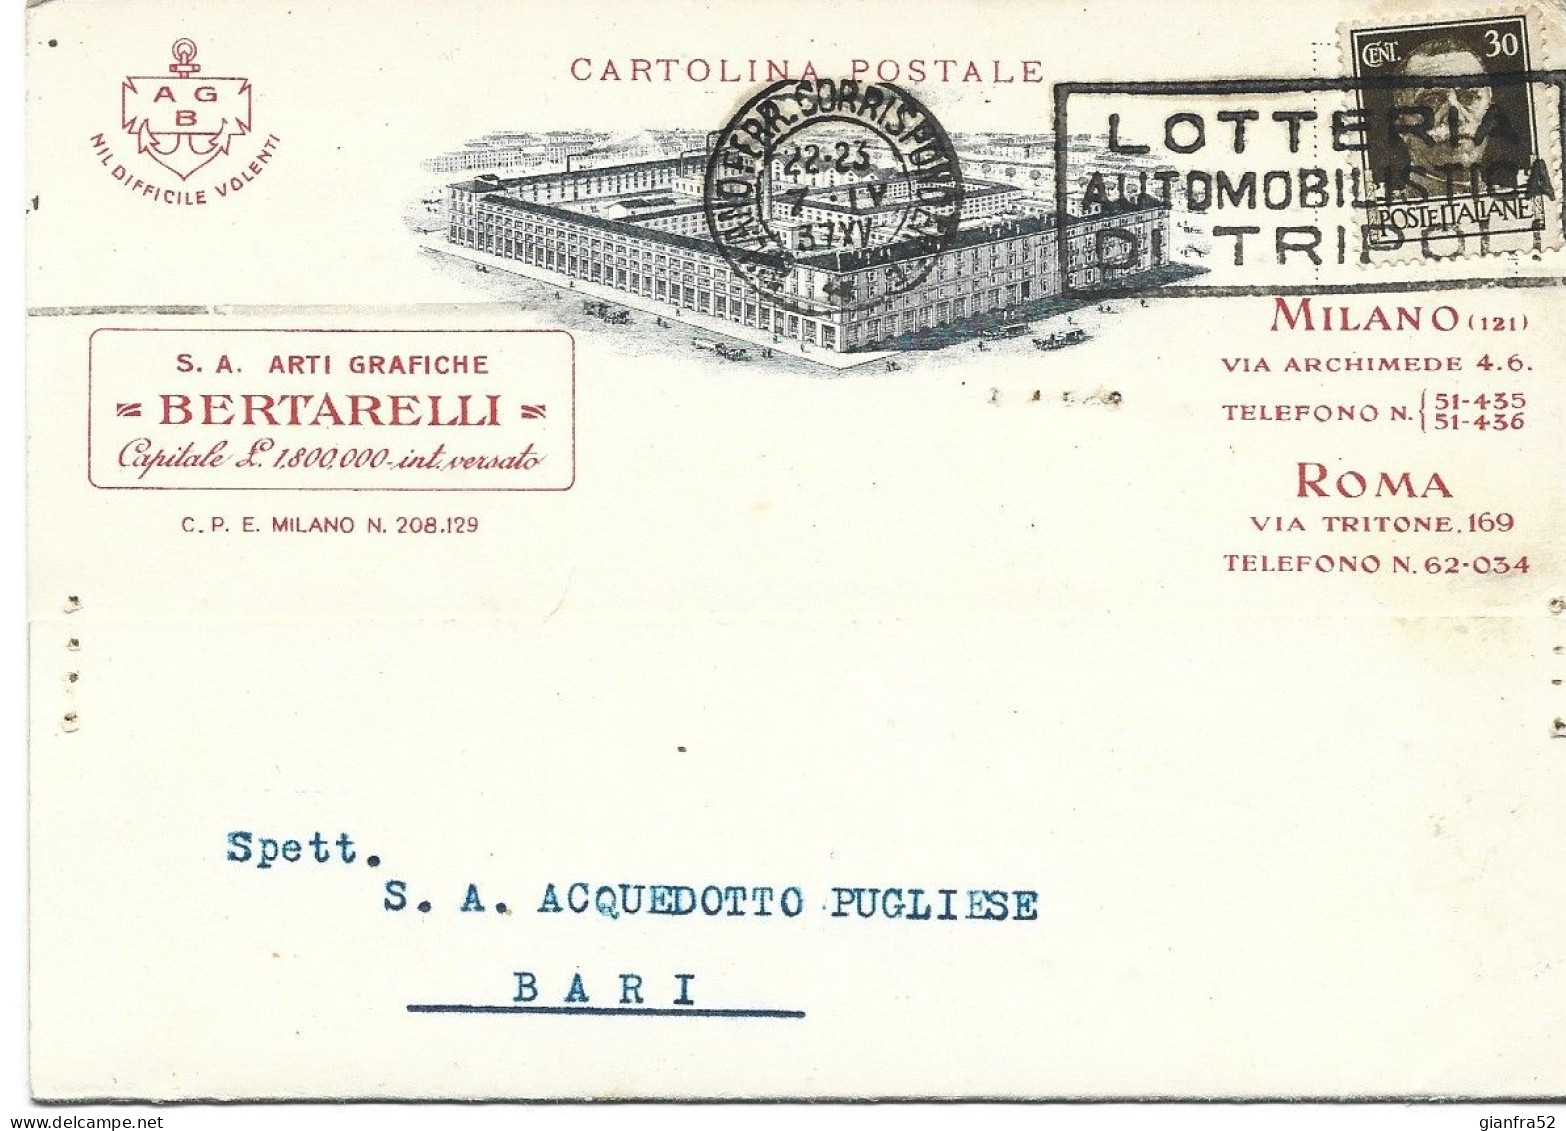 STORIA POSTALE 7/4/1937 CARTOLINA COMMERCIALE BERTARELLI CON CENT. 30 IMPERIALE ISOLATO N. 249 - Reclame